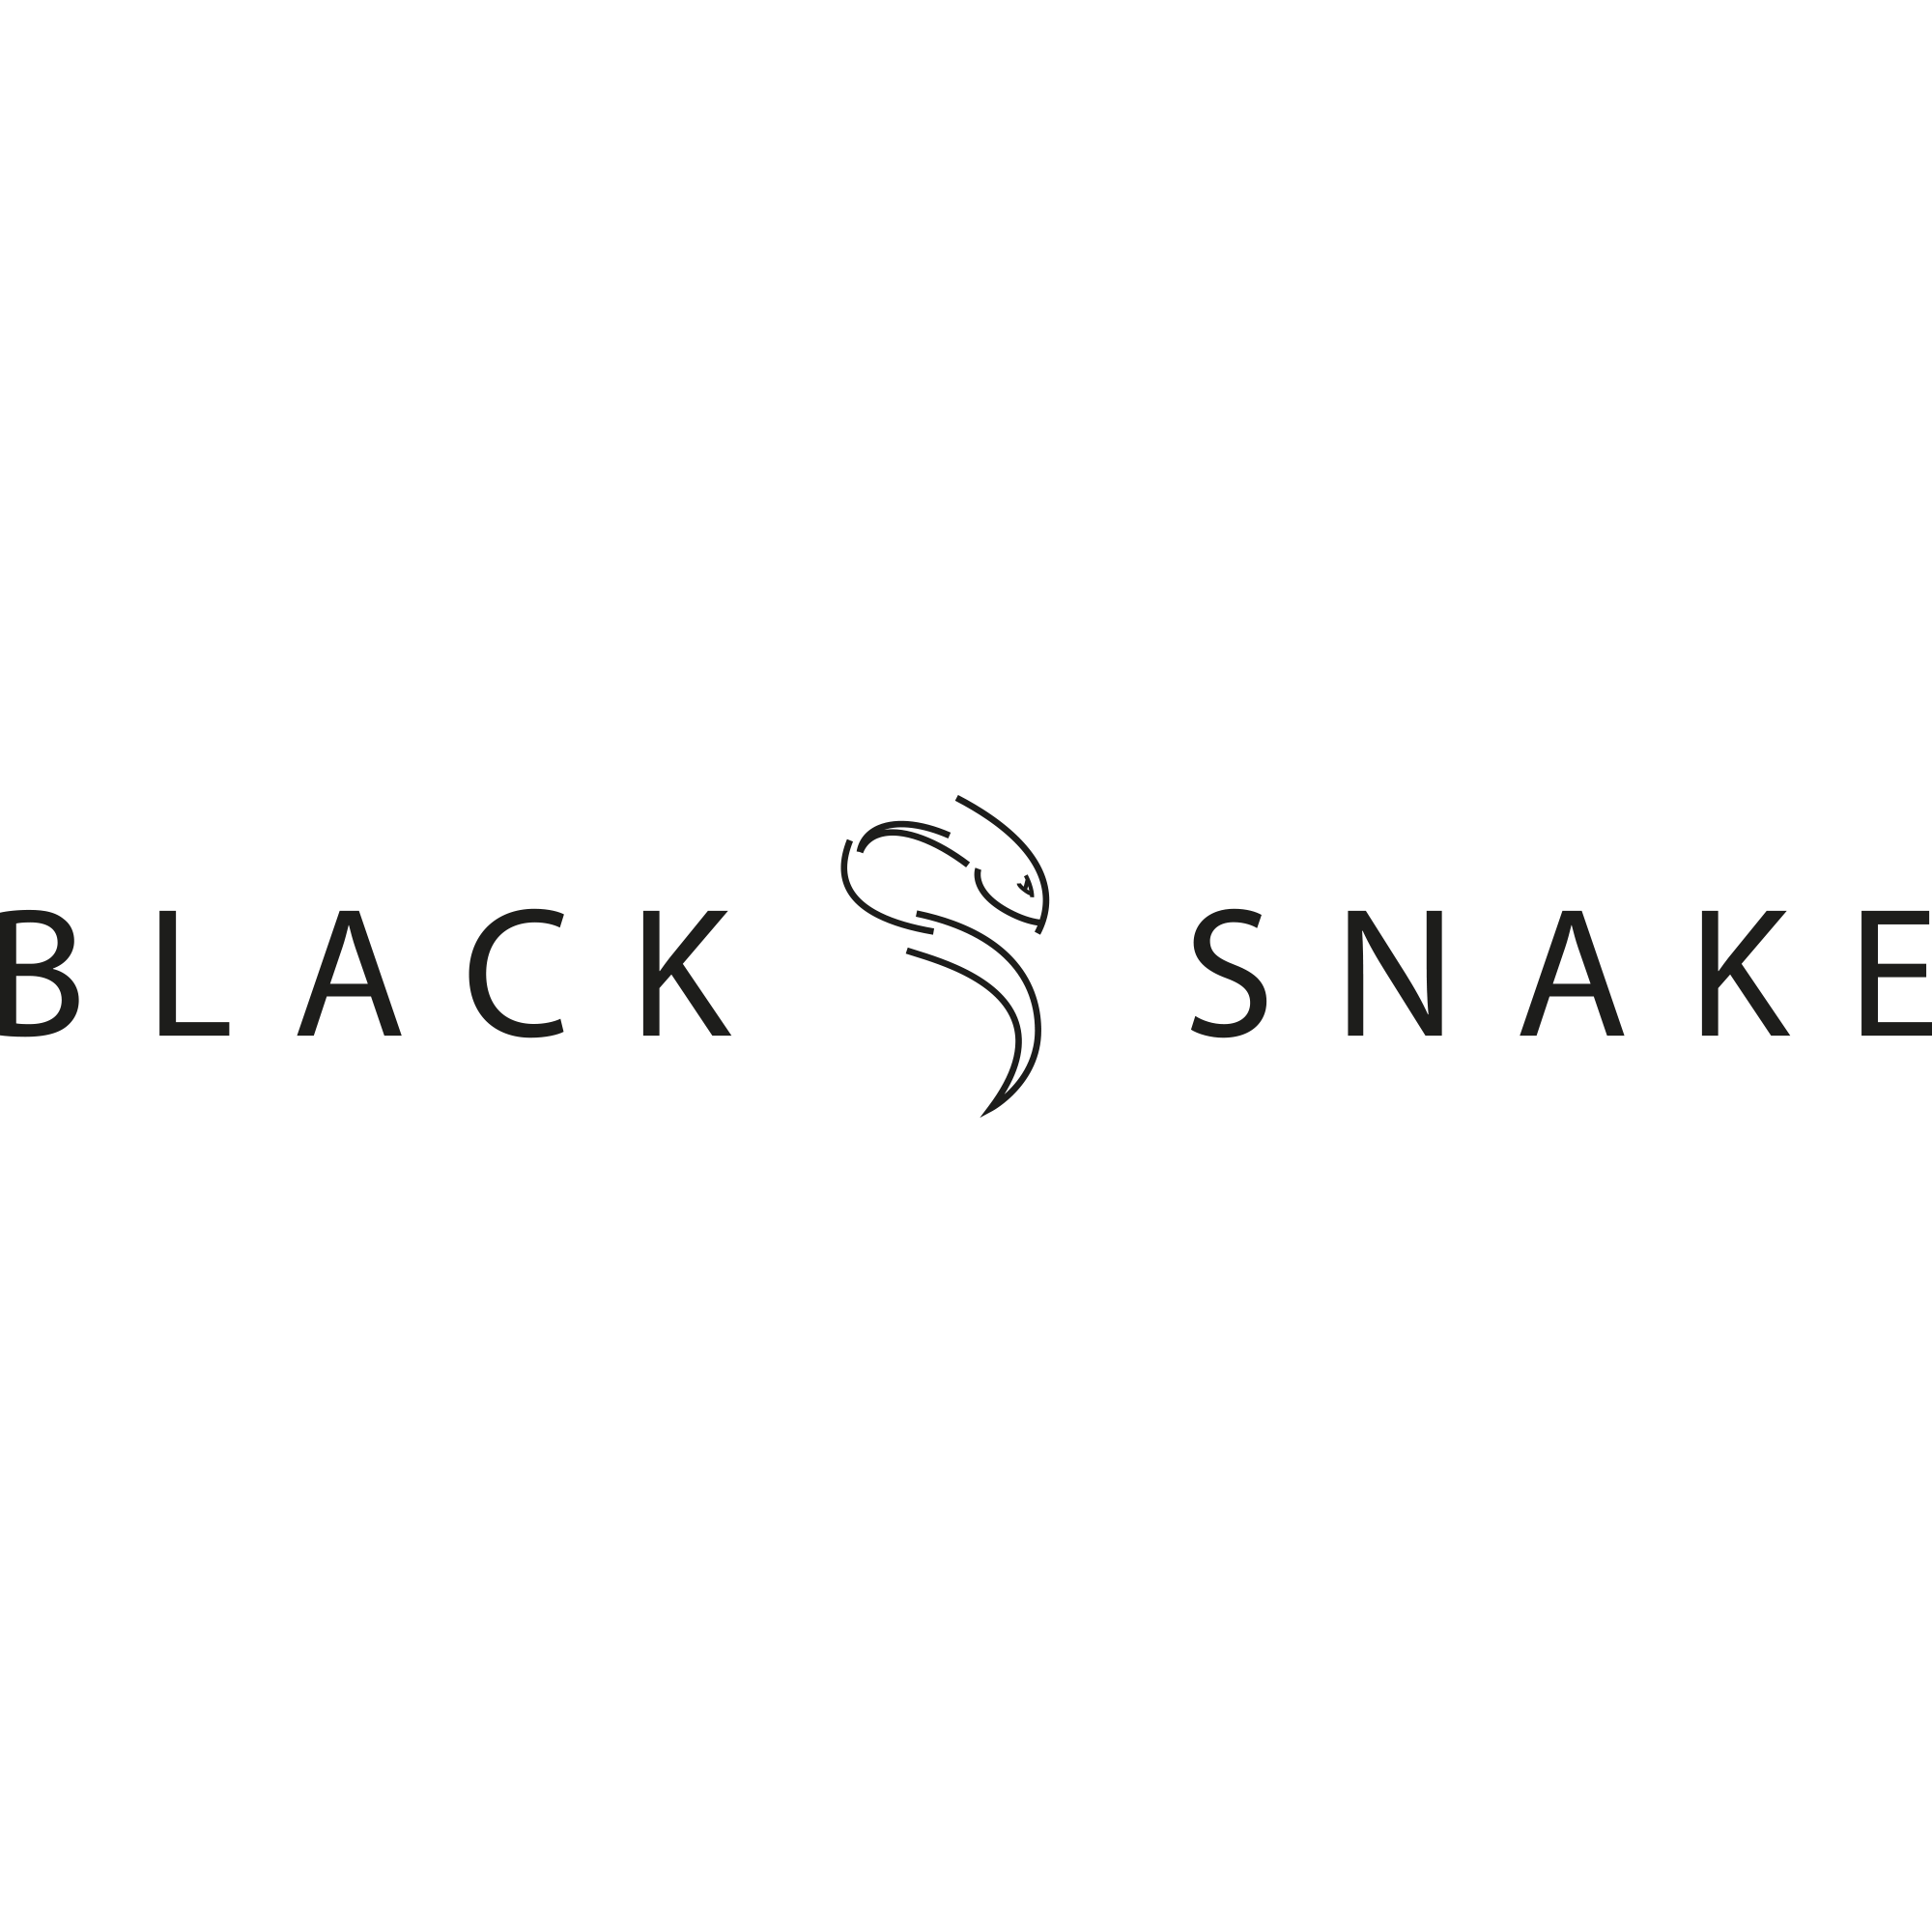 Weitere Artikel von Black Snake